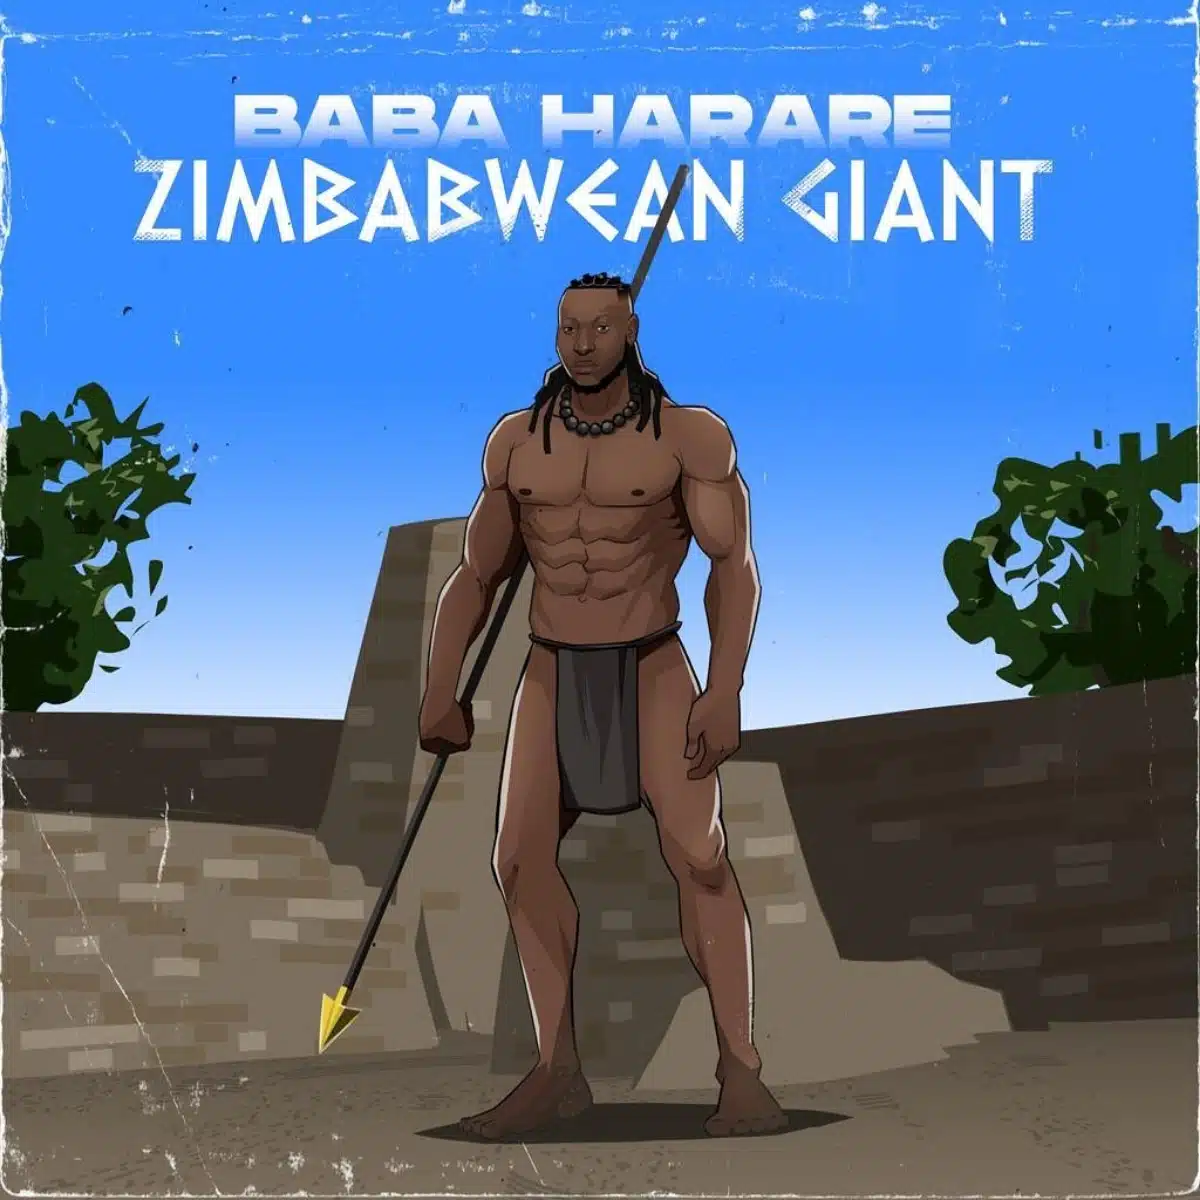 DOWNLOAD: Baba Harare – “Wandibaya Moyo” Mp3